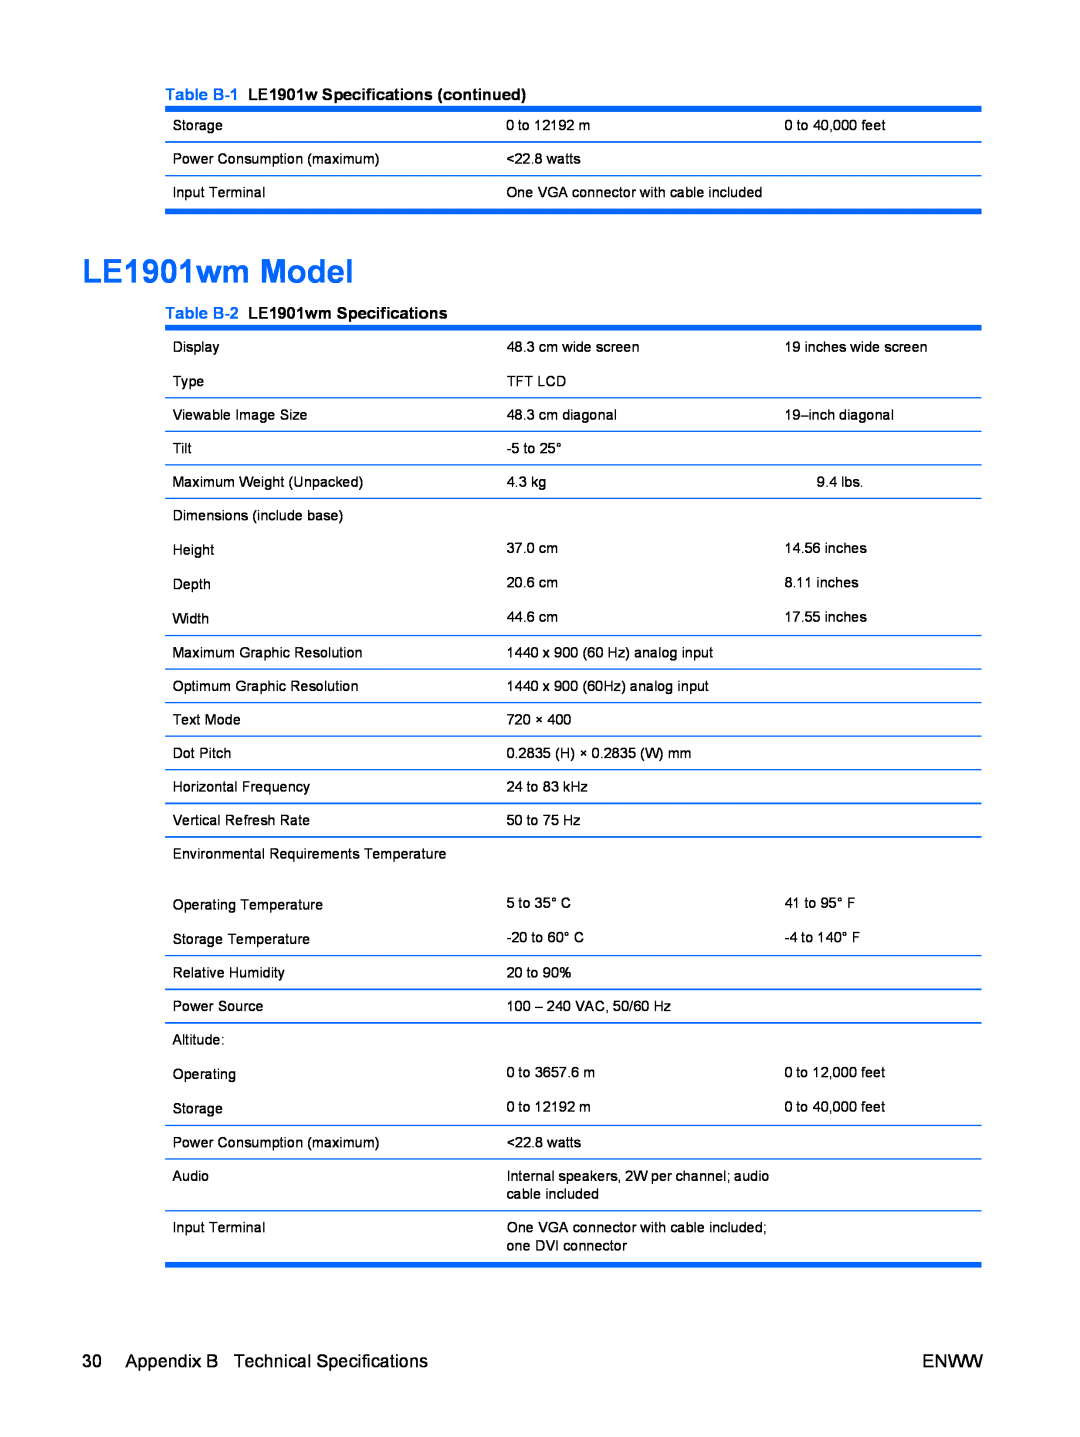 HP LE2201w manual LE1901wm Model, Table B-1 LE1901w Specifications continued, Table B-2 LE1901wm Specifications 